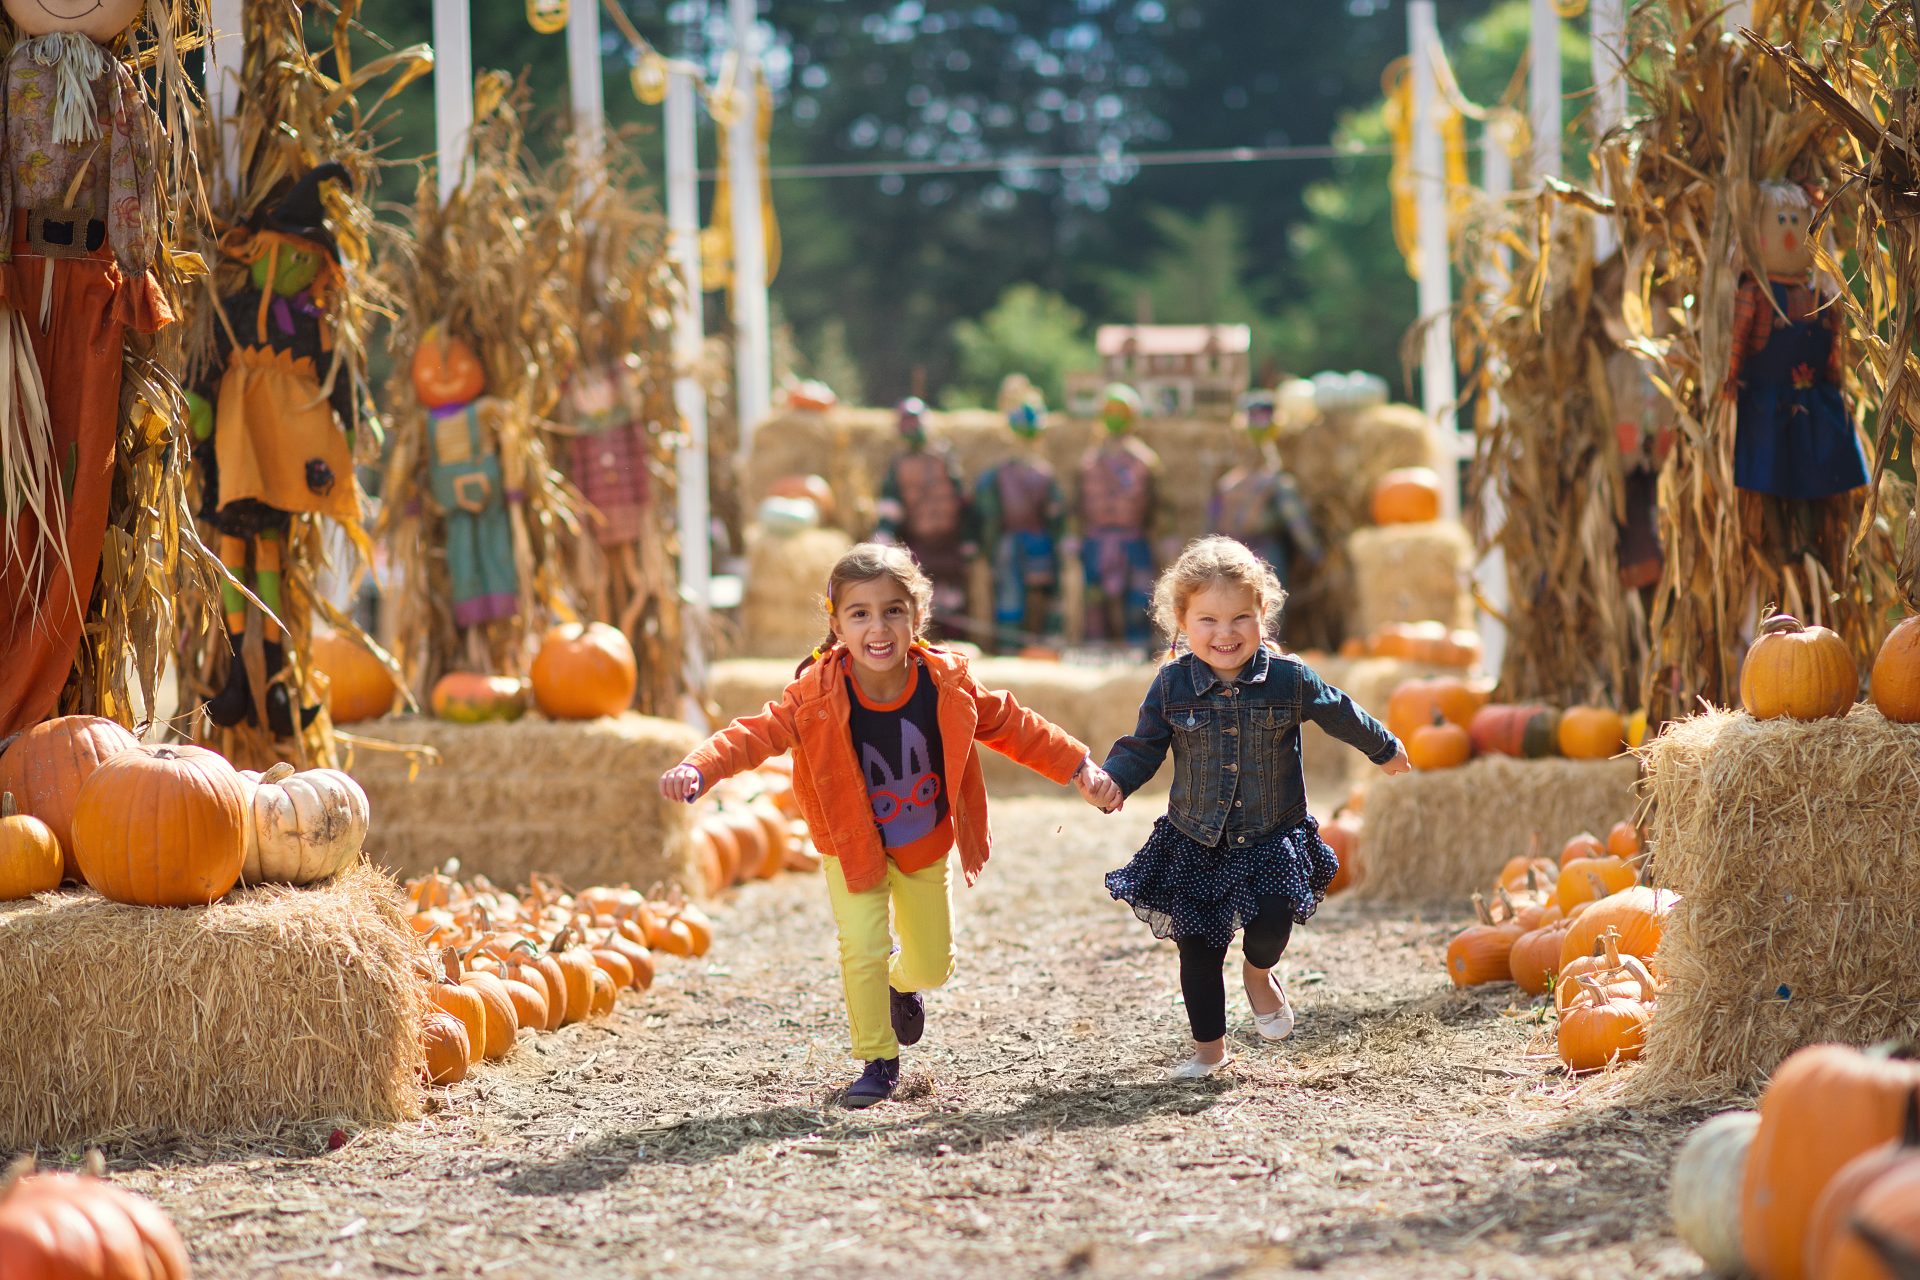 Two young children running through a pumpkin patch